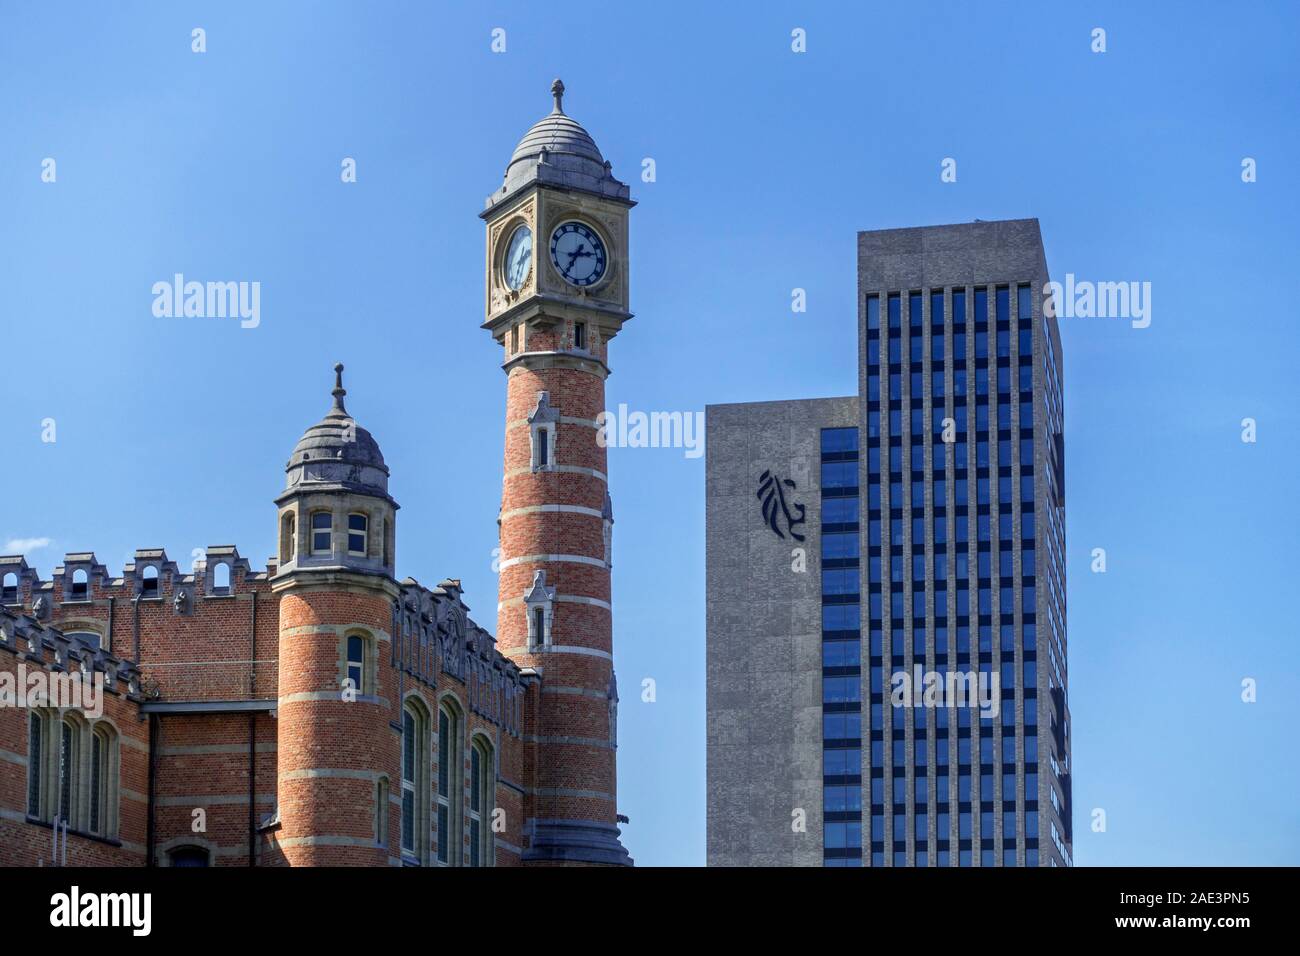 Gent-Sint-Pieters gare la tour de l'horloge et Virginie Loveling building / VCA, office gouvernemental dans la ville de Gand, Flandre orientale, Belgique Banque D'Images